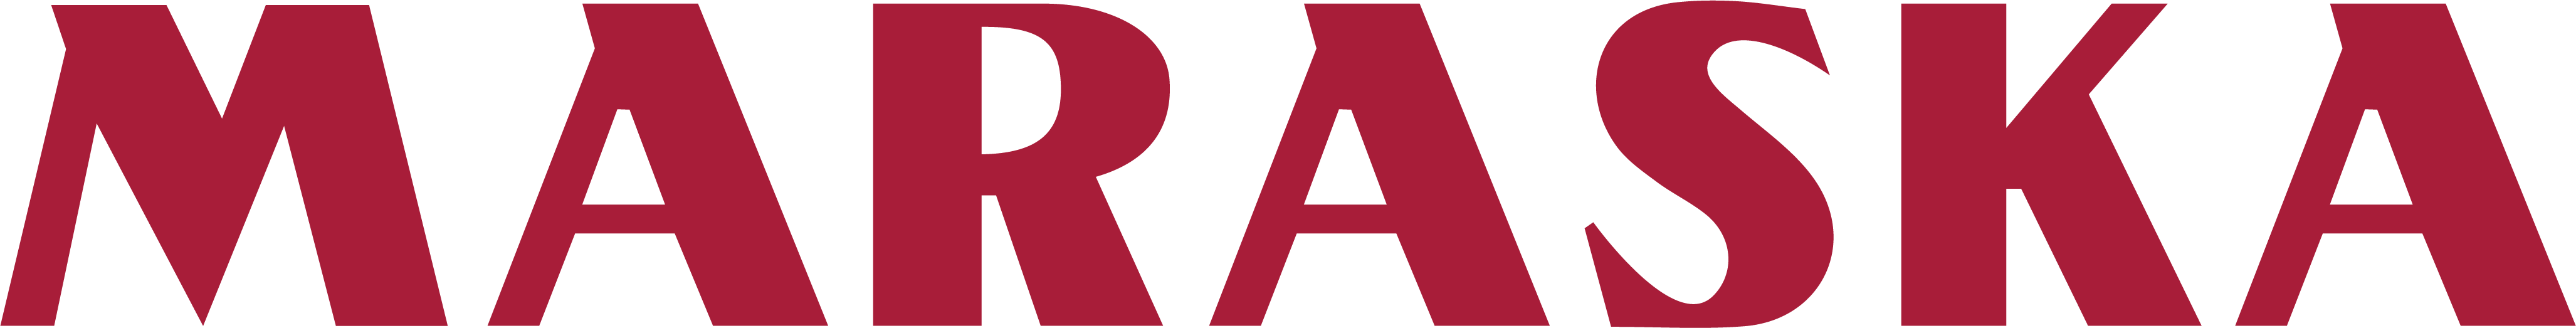 Maraska logo